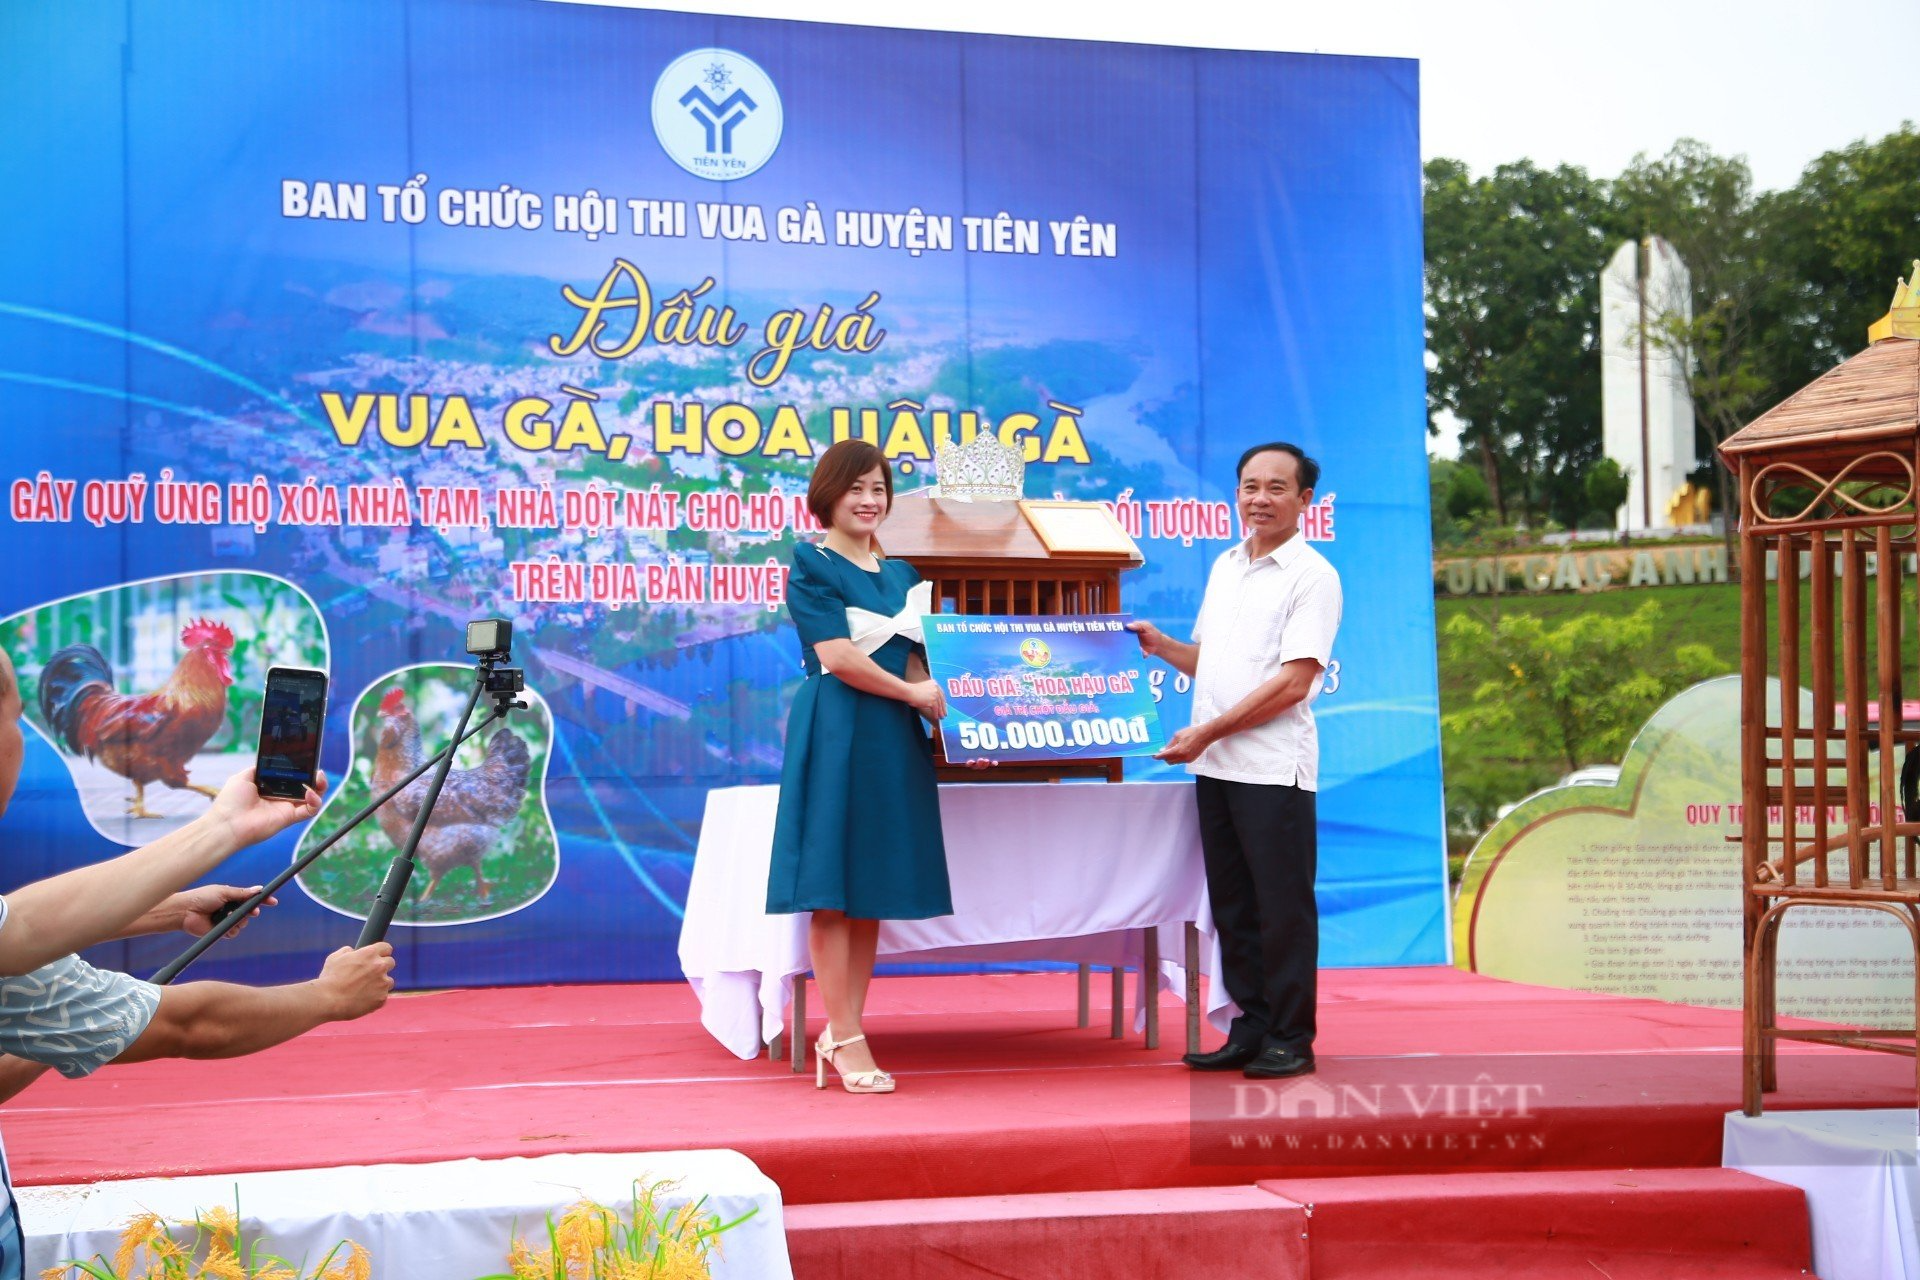 Vua gà, Hoa hậu gà ở Quảng Ninh lên sàn đấu giá, gây quỹ ủng hộ xóa nhà tạm cho người nghèo - Ảnh 4.